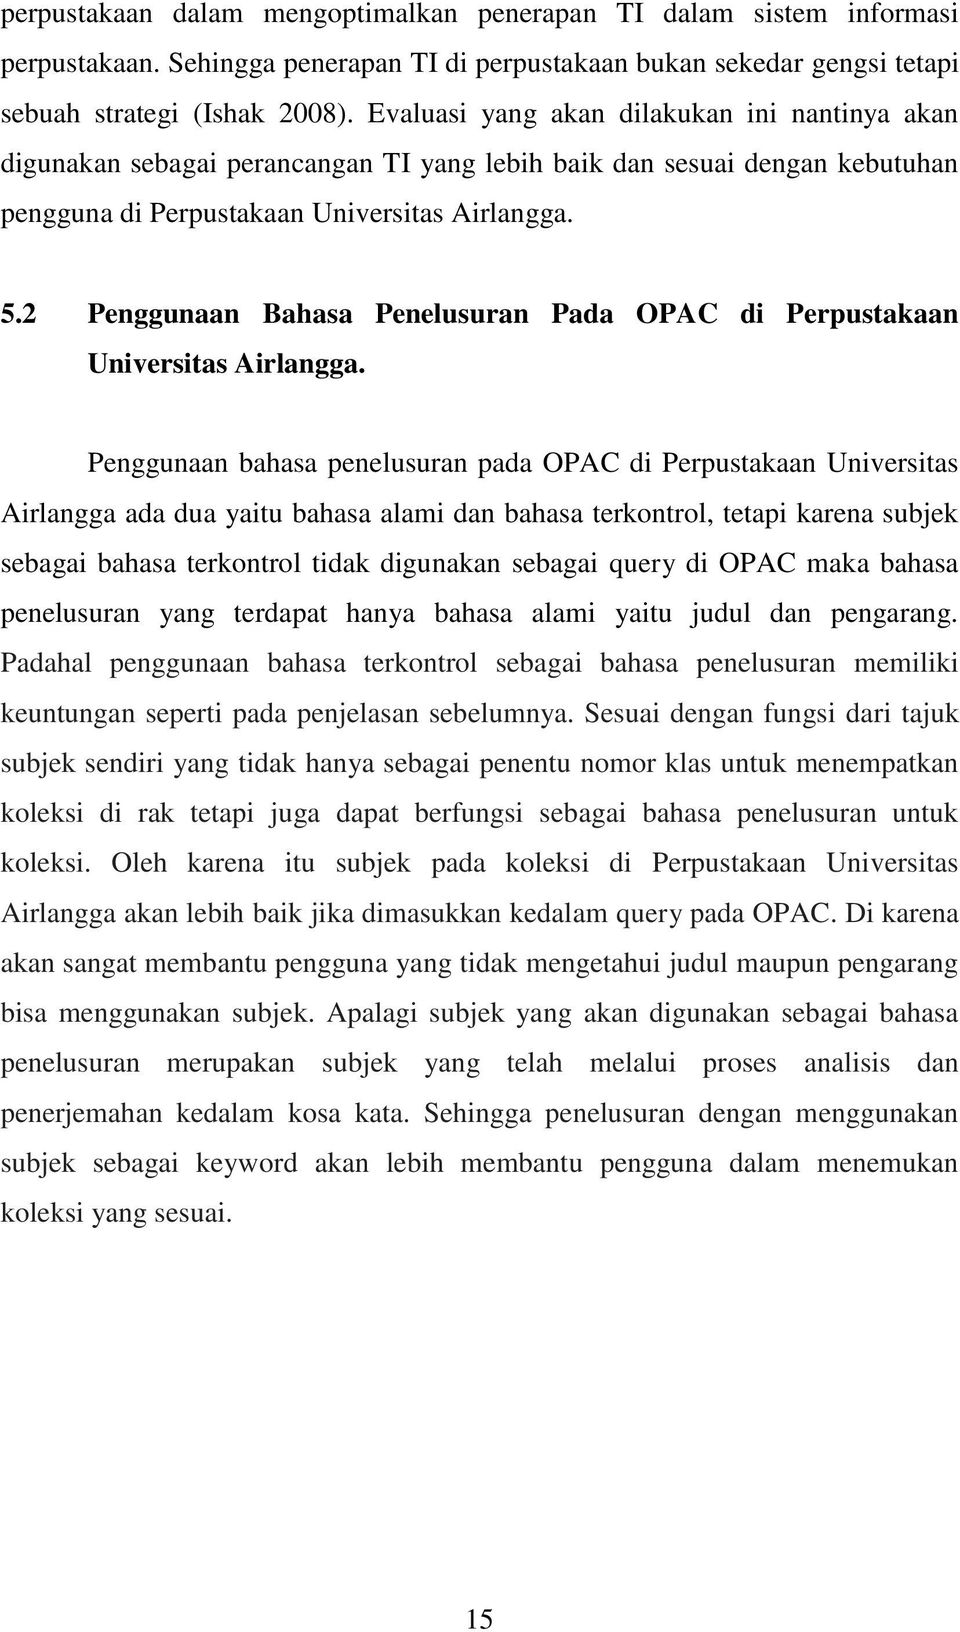 2 Penggunaan Bahasa Penelusuran Pada OPAC di Perpustakaan Universitas Airlangga.